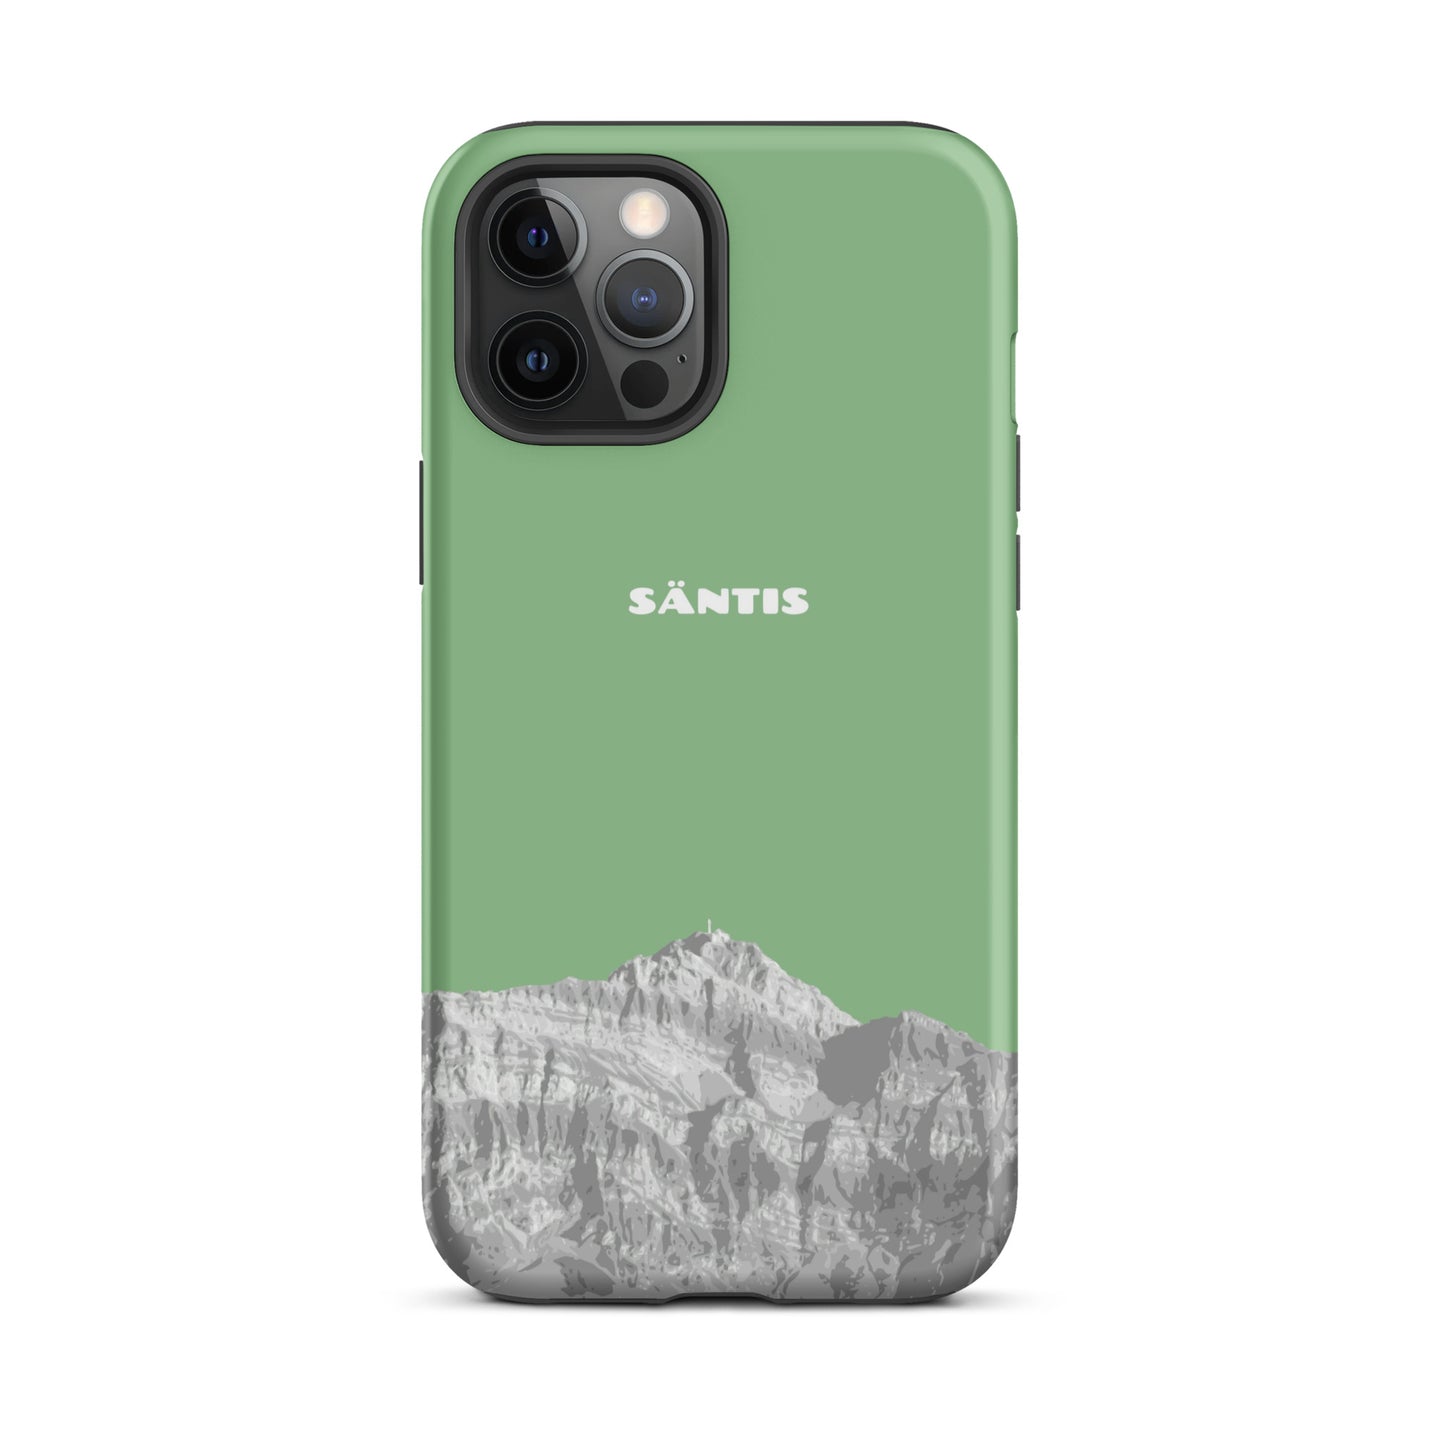 Hülle für das iPhone 12 Pro Max von Apple in der Farbe Hellgrün, dass den Säntis im Alpstein zeigt.